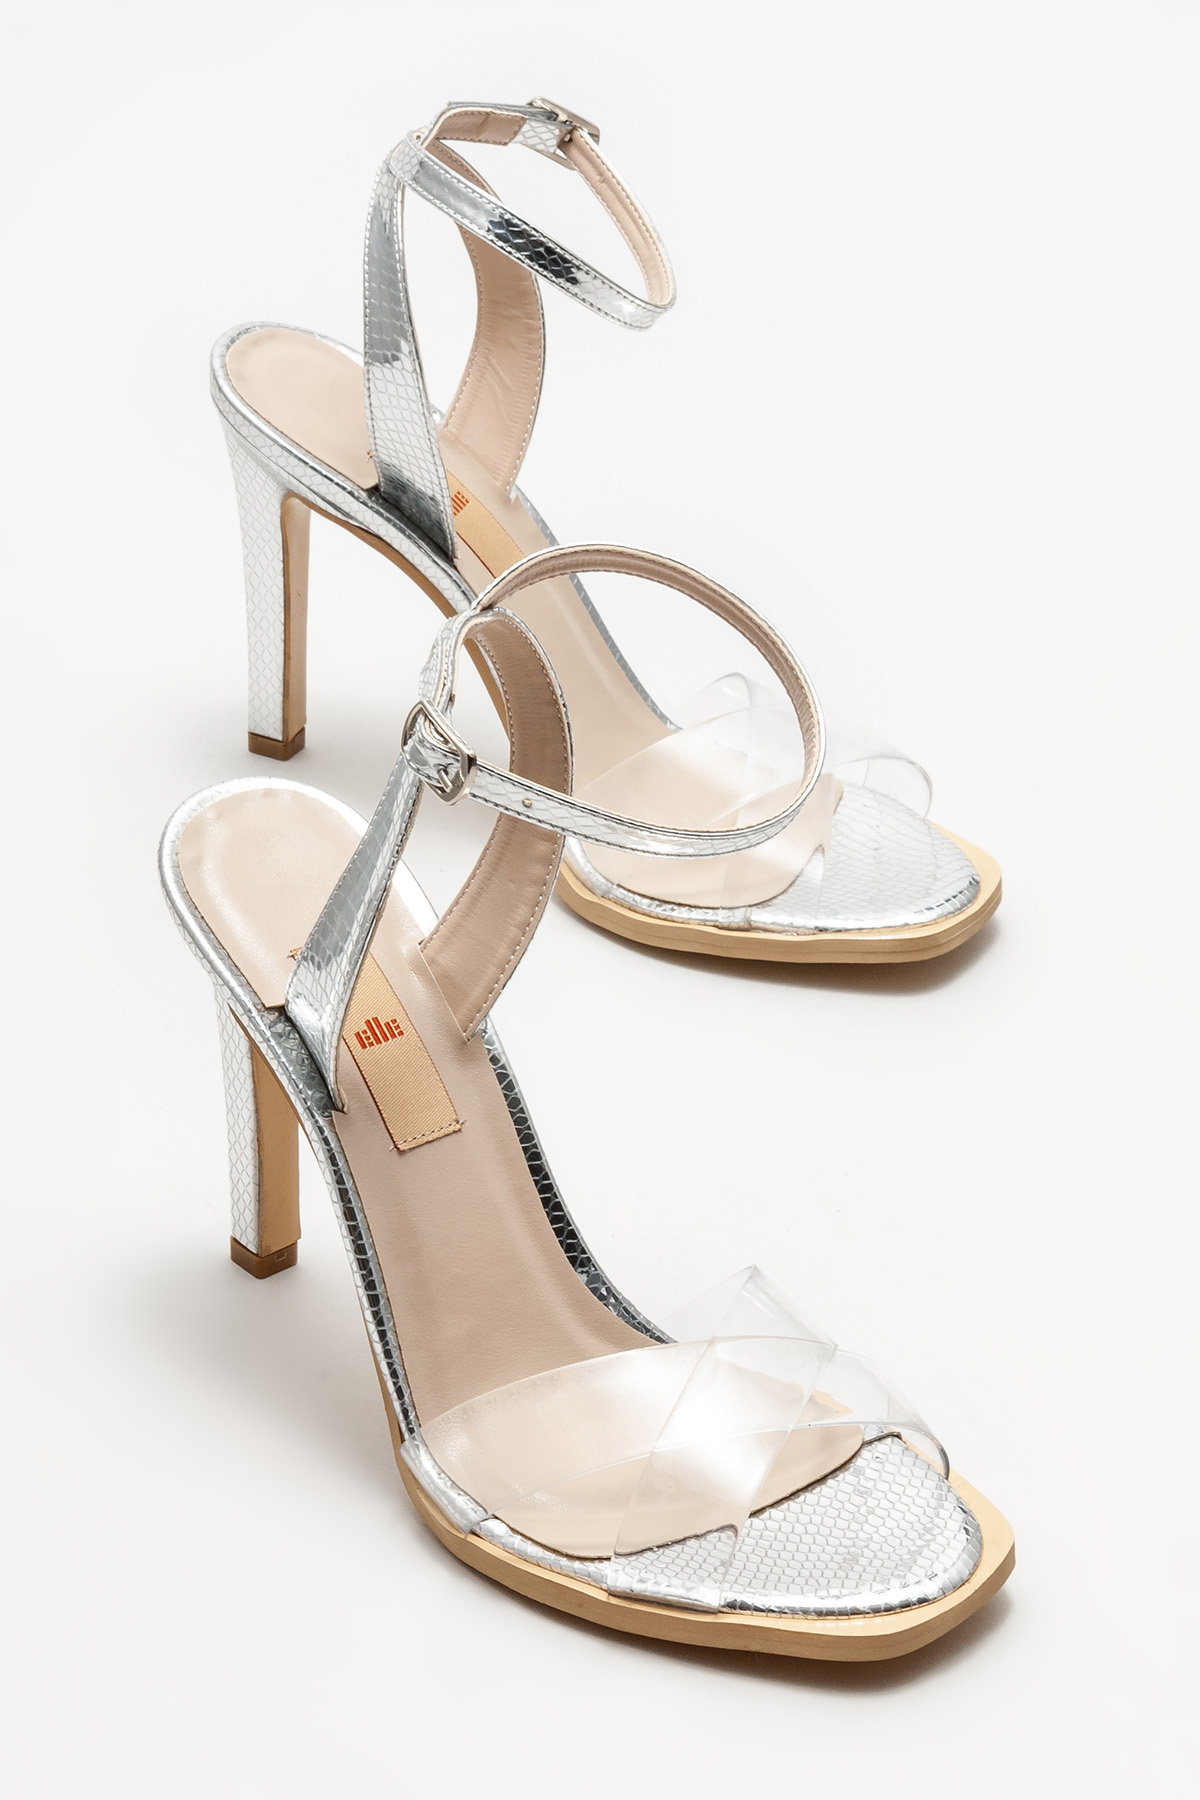 Lame Kadın Topuklu Sandalet Satın Al! NECHA-356 Fiyatı | Elle Shoes